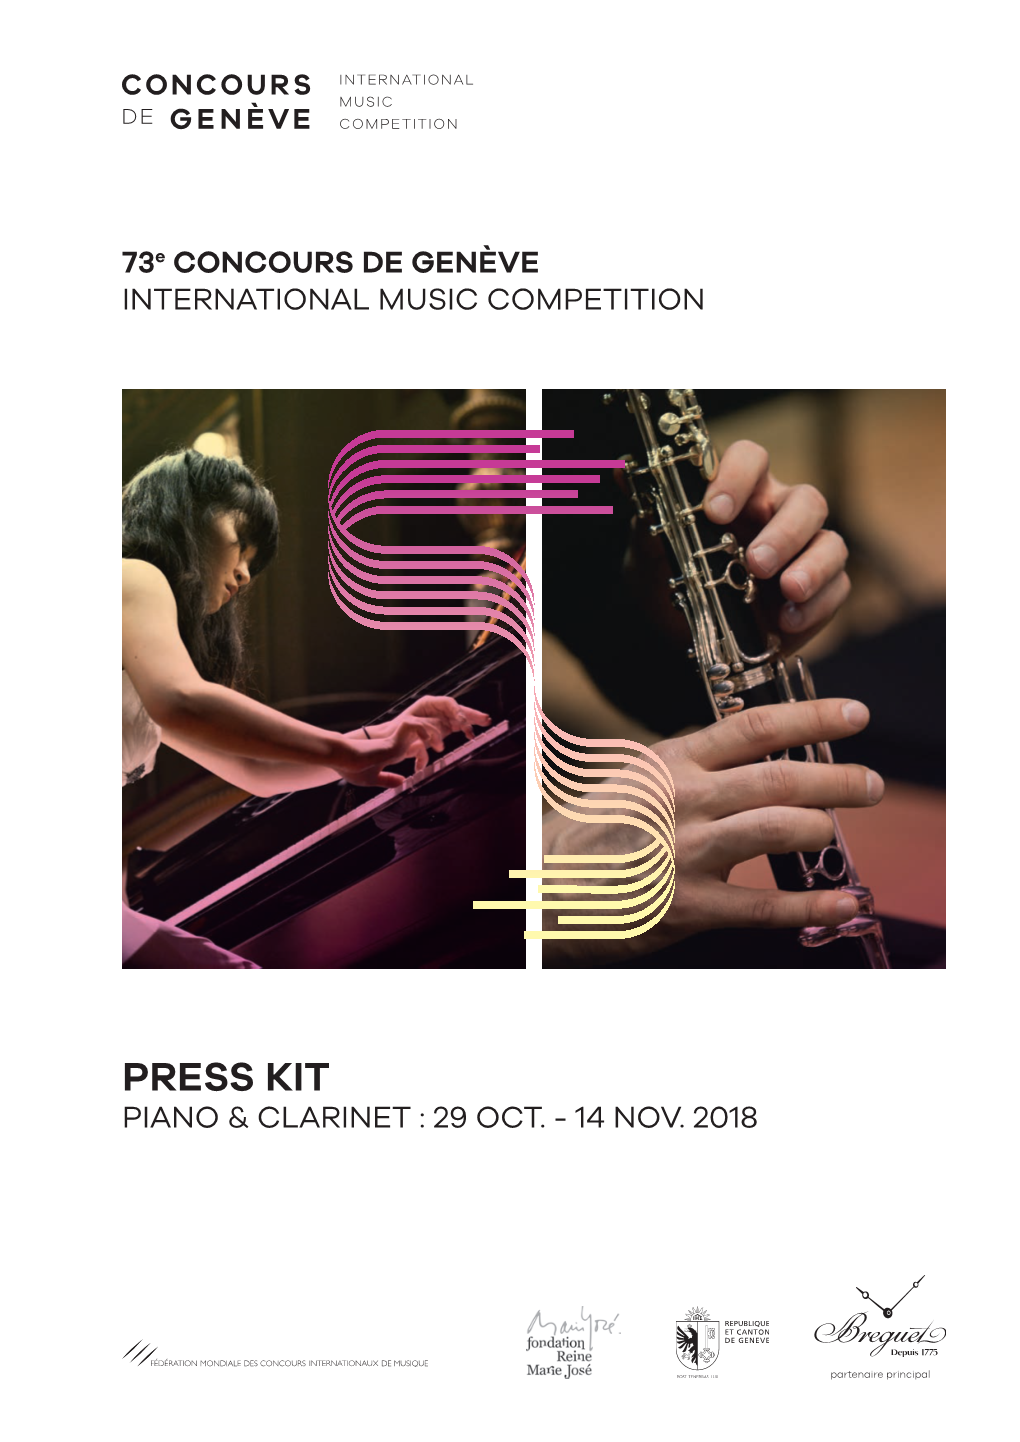 Press Kit Piano & Clarinet : 29 Oct